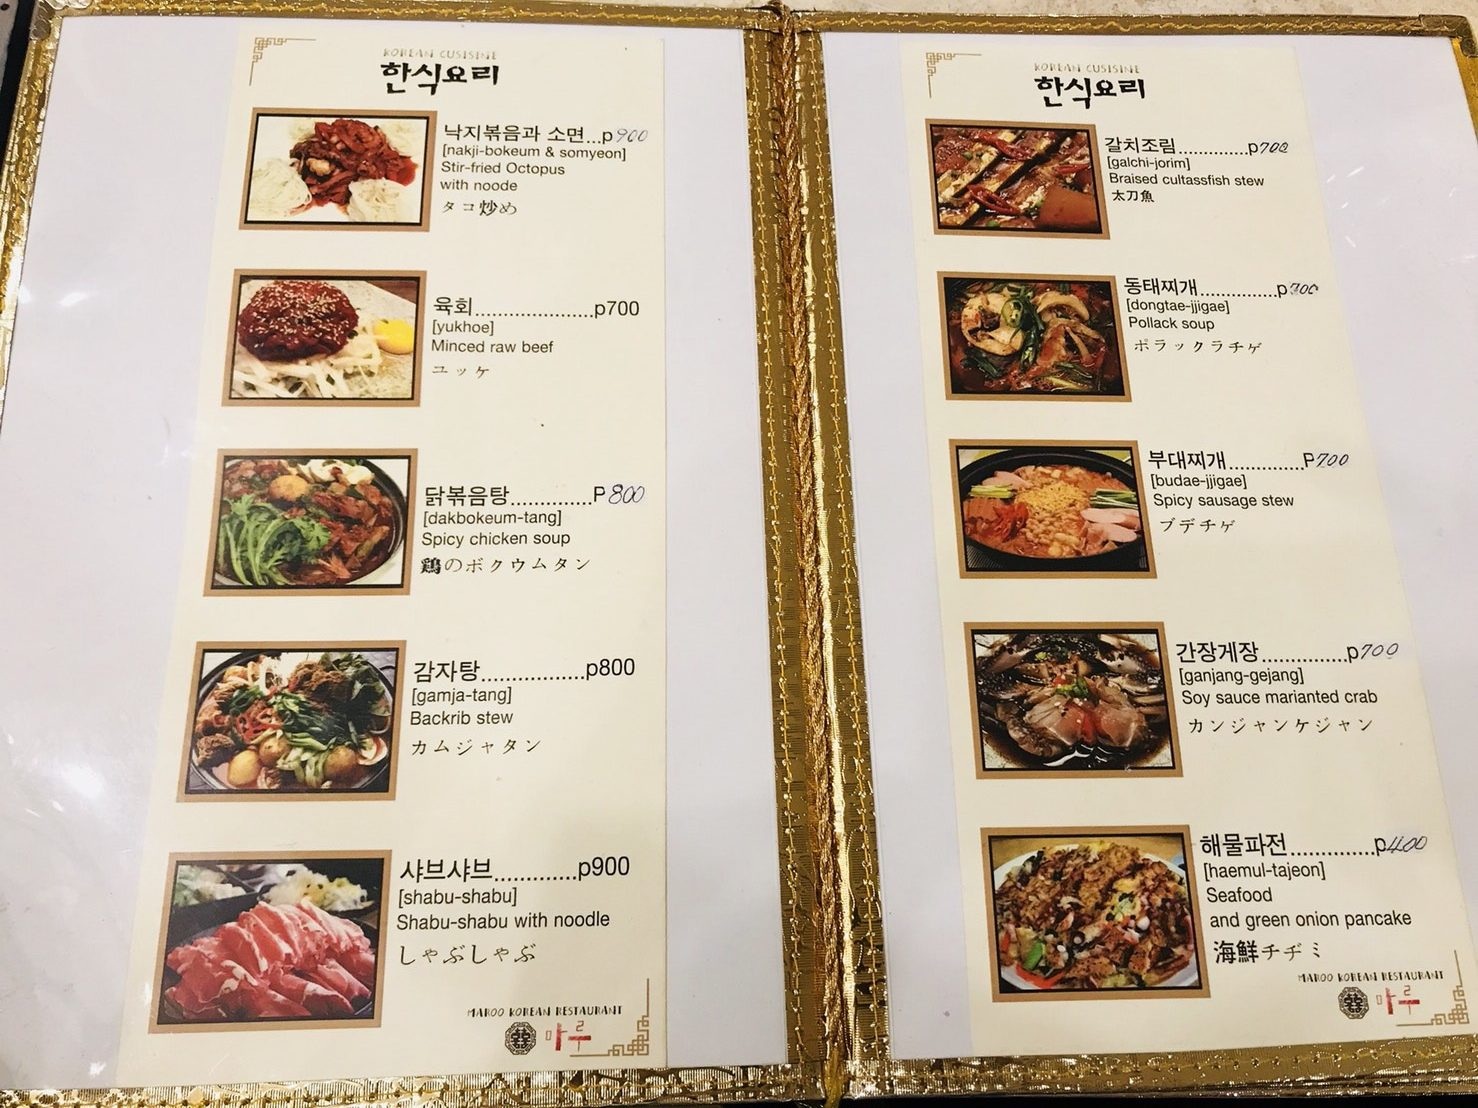 韓国人がオススメする本場韓国料理「MAROO」